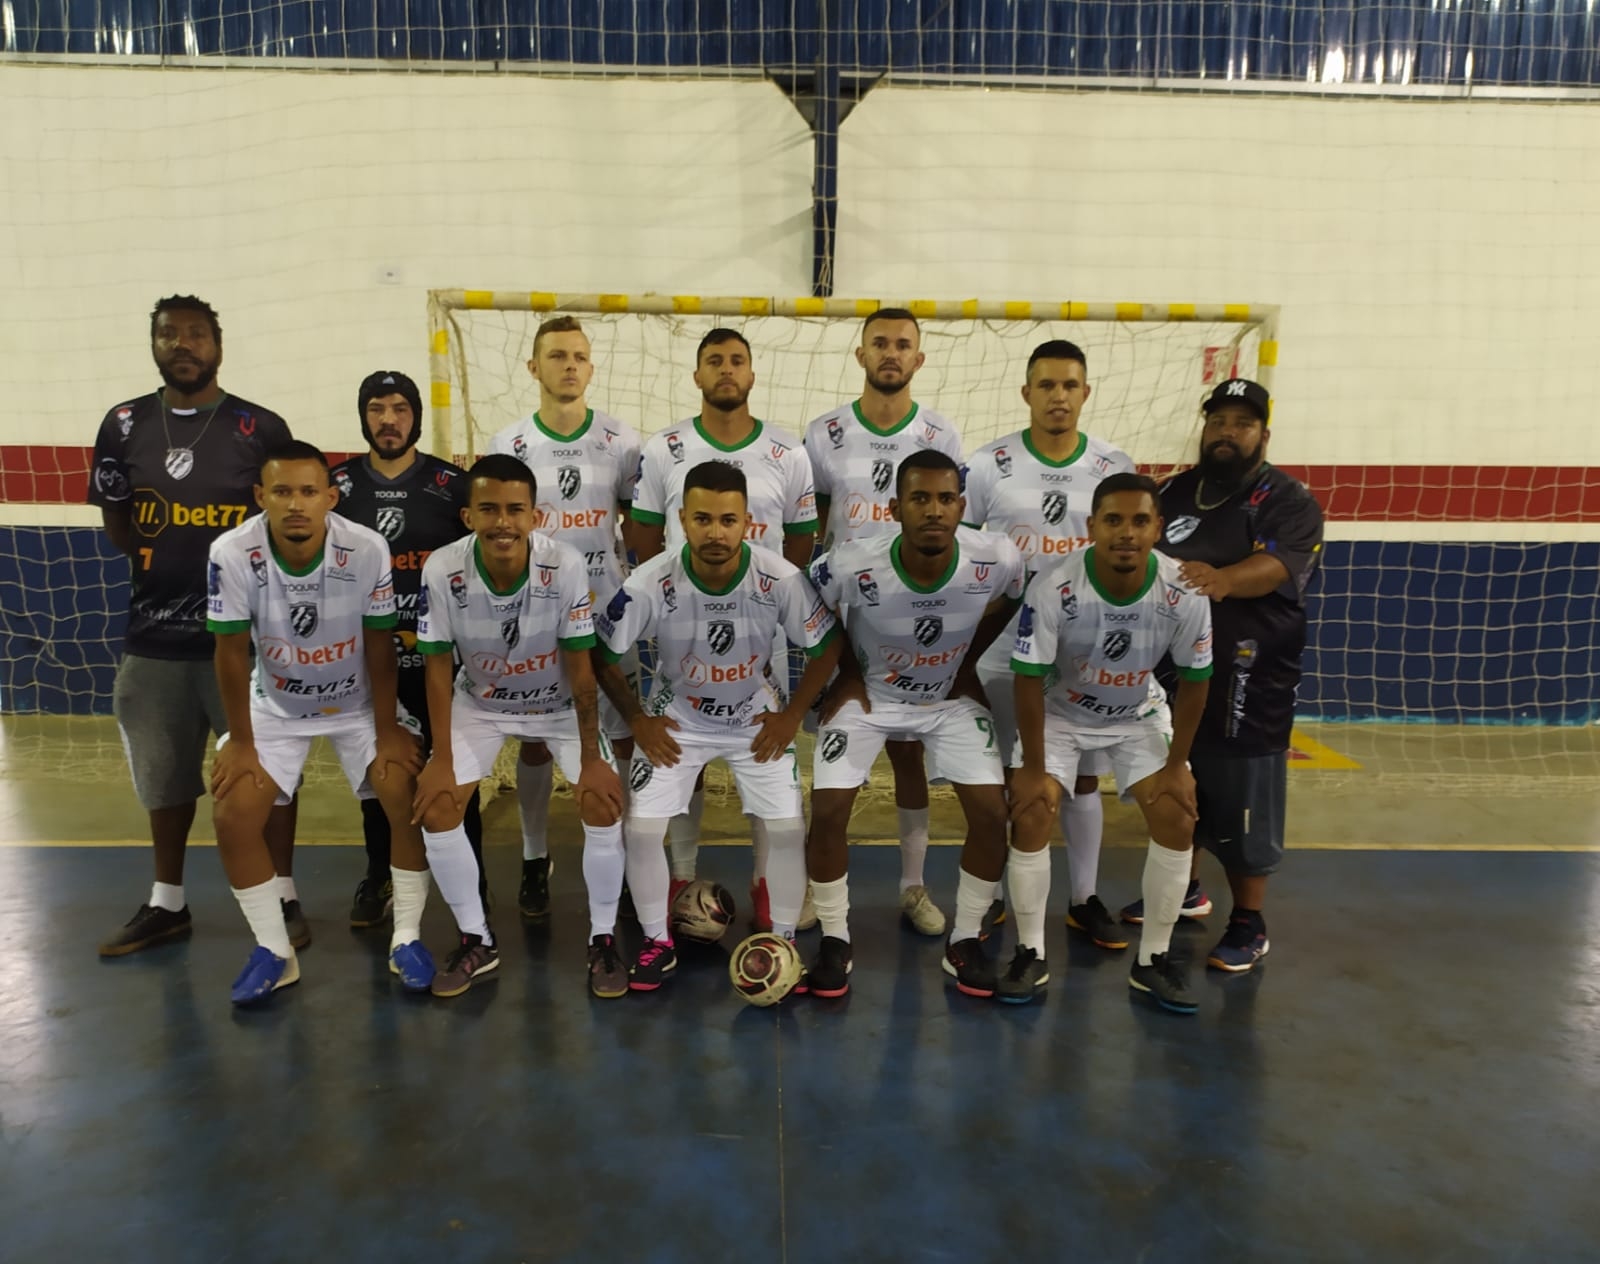 Com Lagoão lotado, Apucarana Futsal vence e fica perto da Série